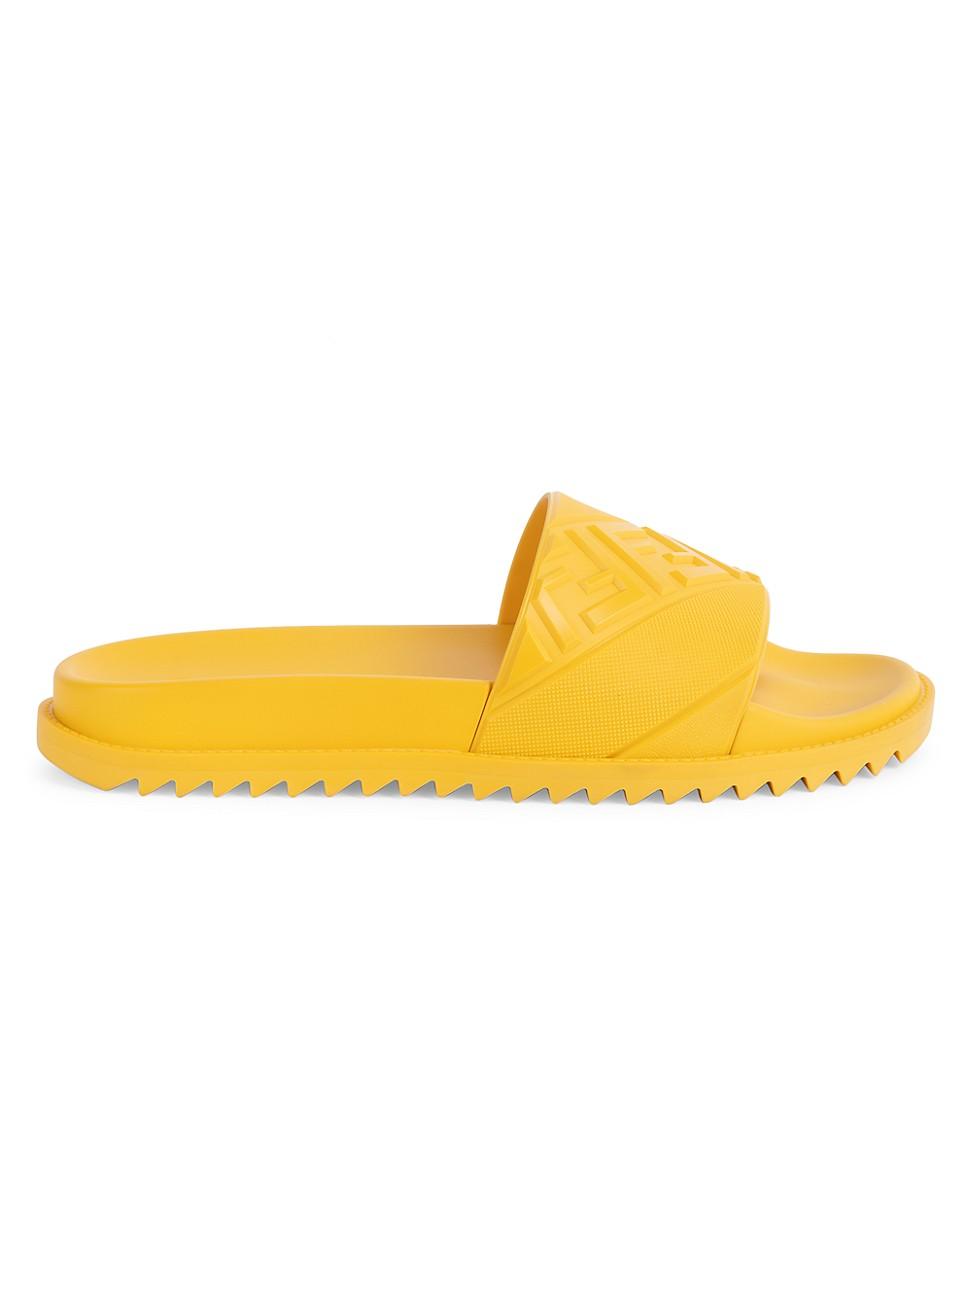 Fendi Rubber Logo Embossed Slide Sandals in Yellow for Men - Lyst